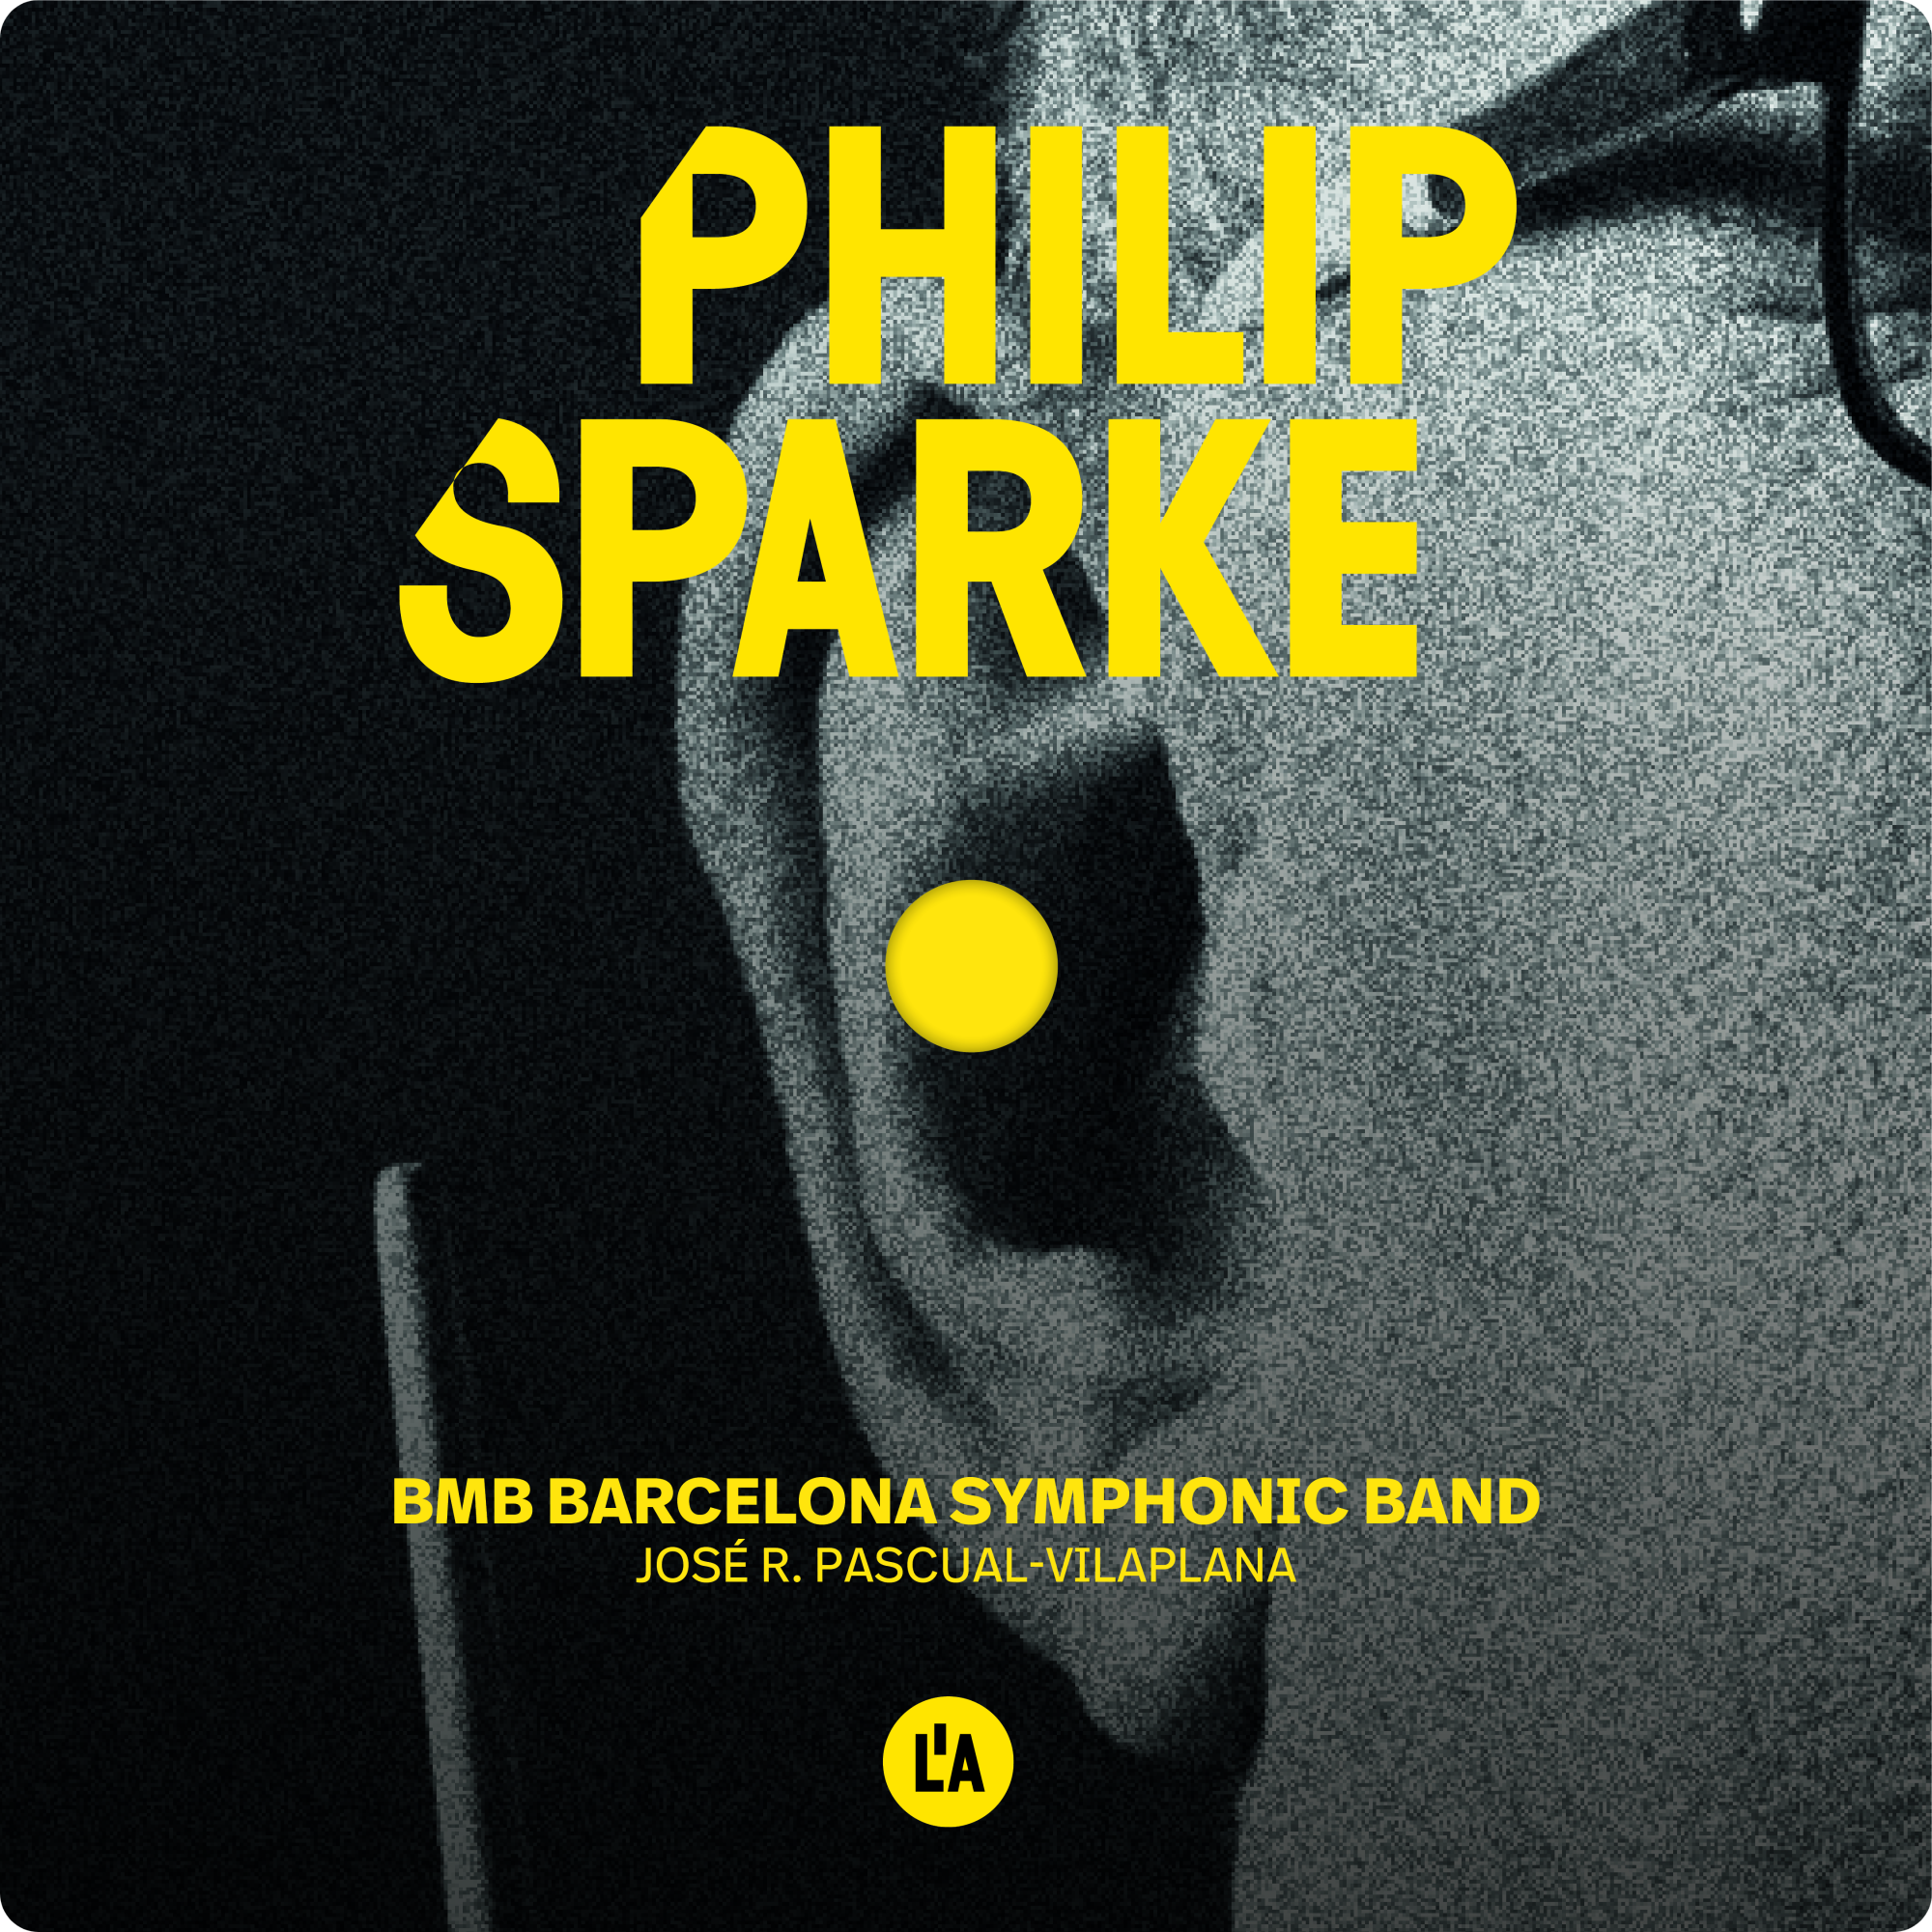 El Himno al crepsculo de Philip Sparke: virtuosismo bandstico y esplndido goce esttico